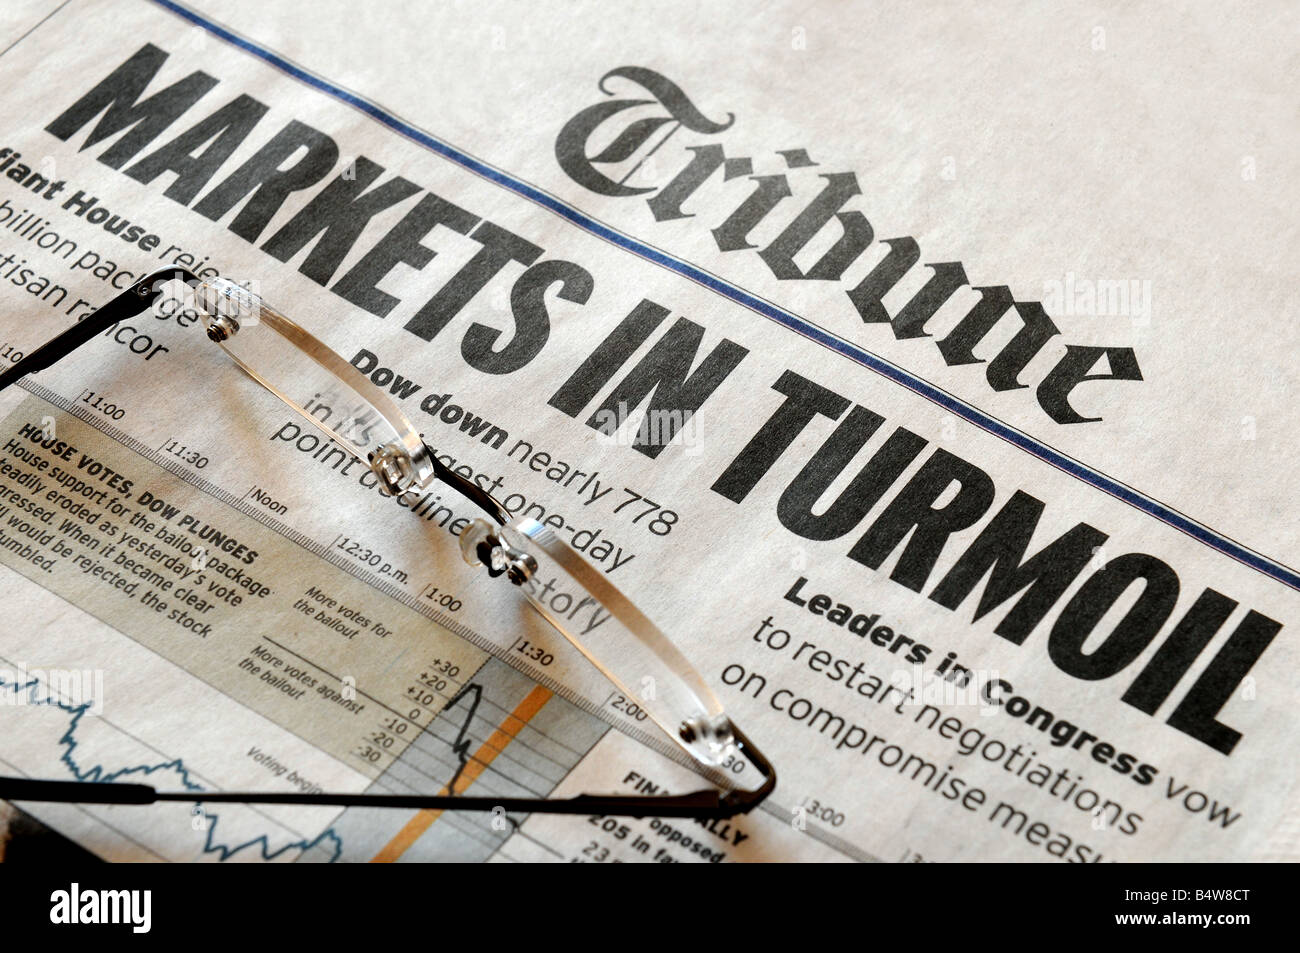 Markets In Turmoil - stock market headlines from an (unknown) Tribune newapsper Stock Photo